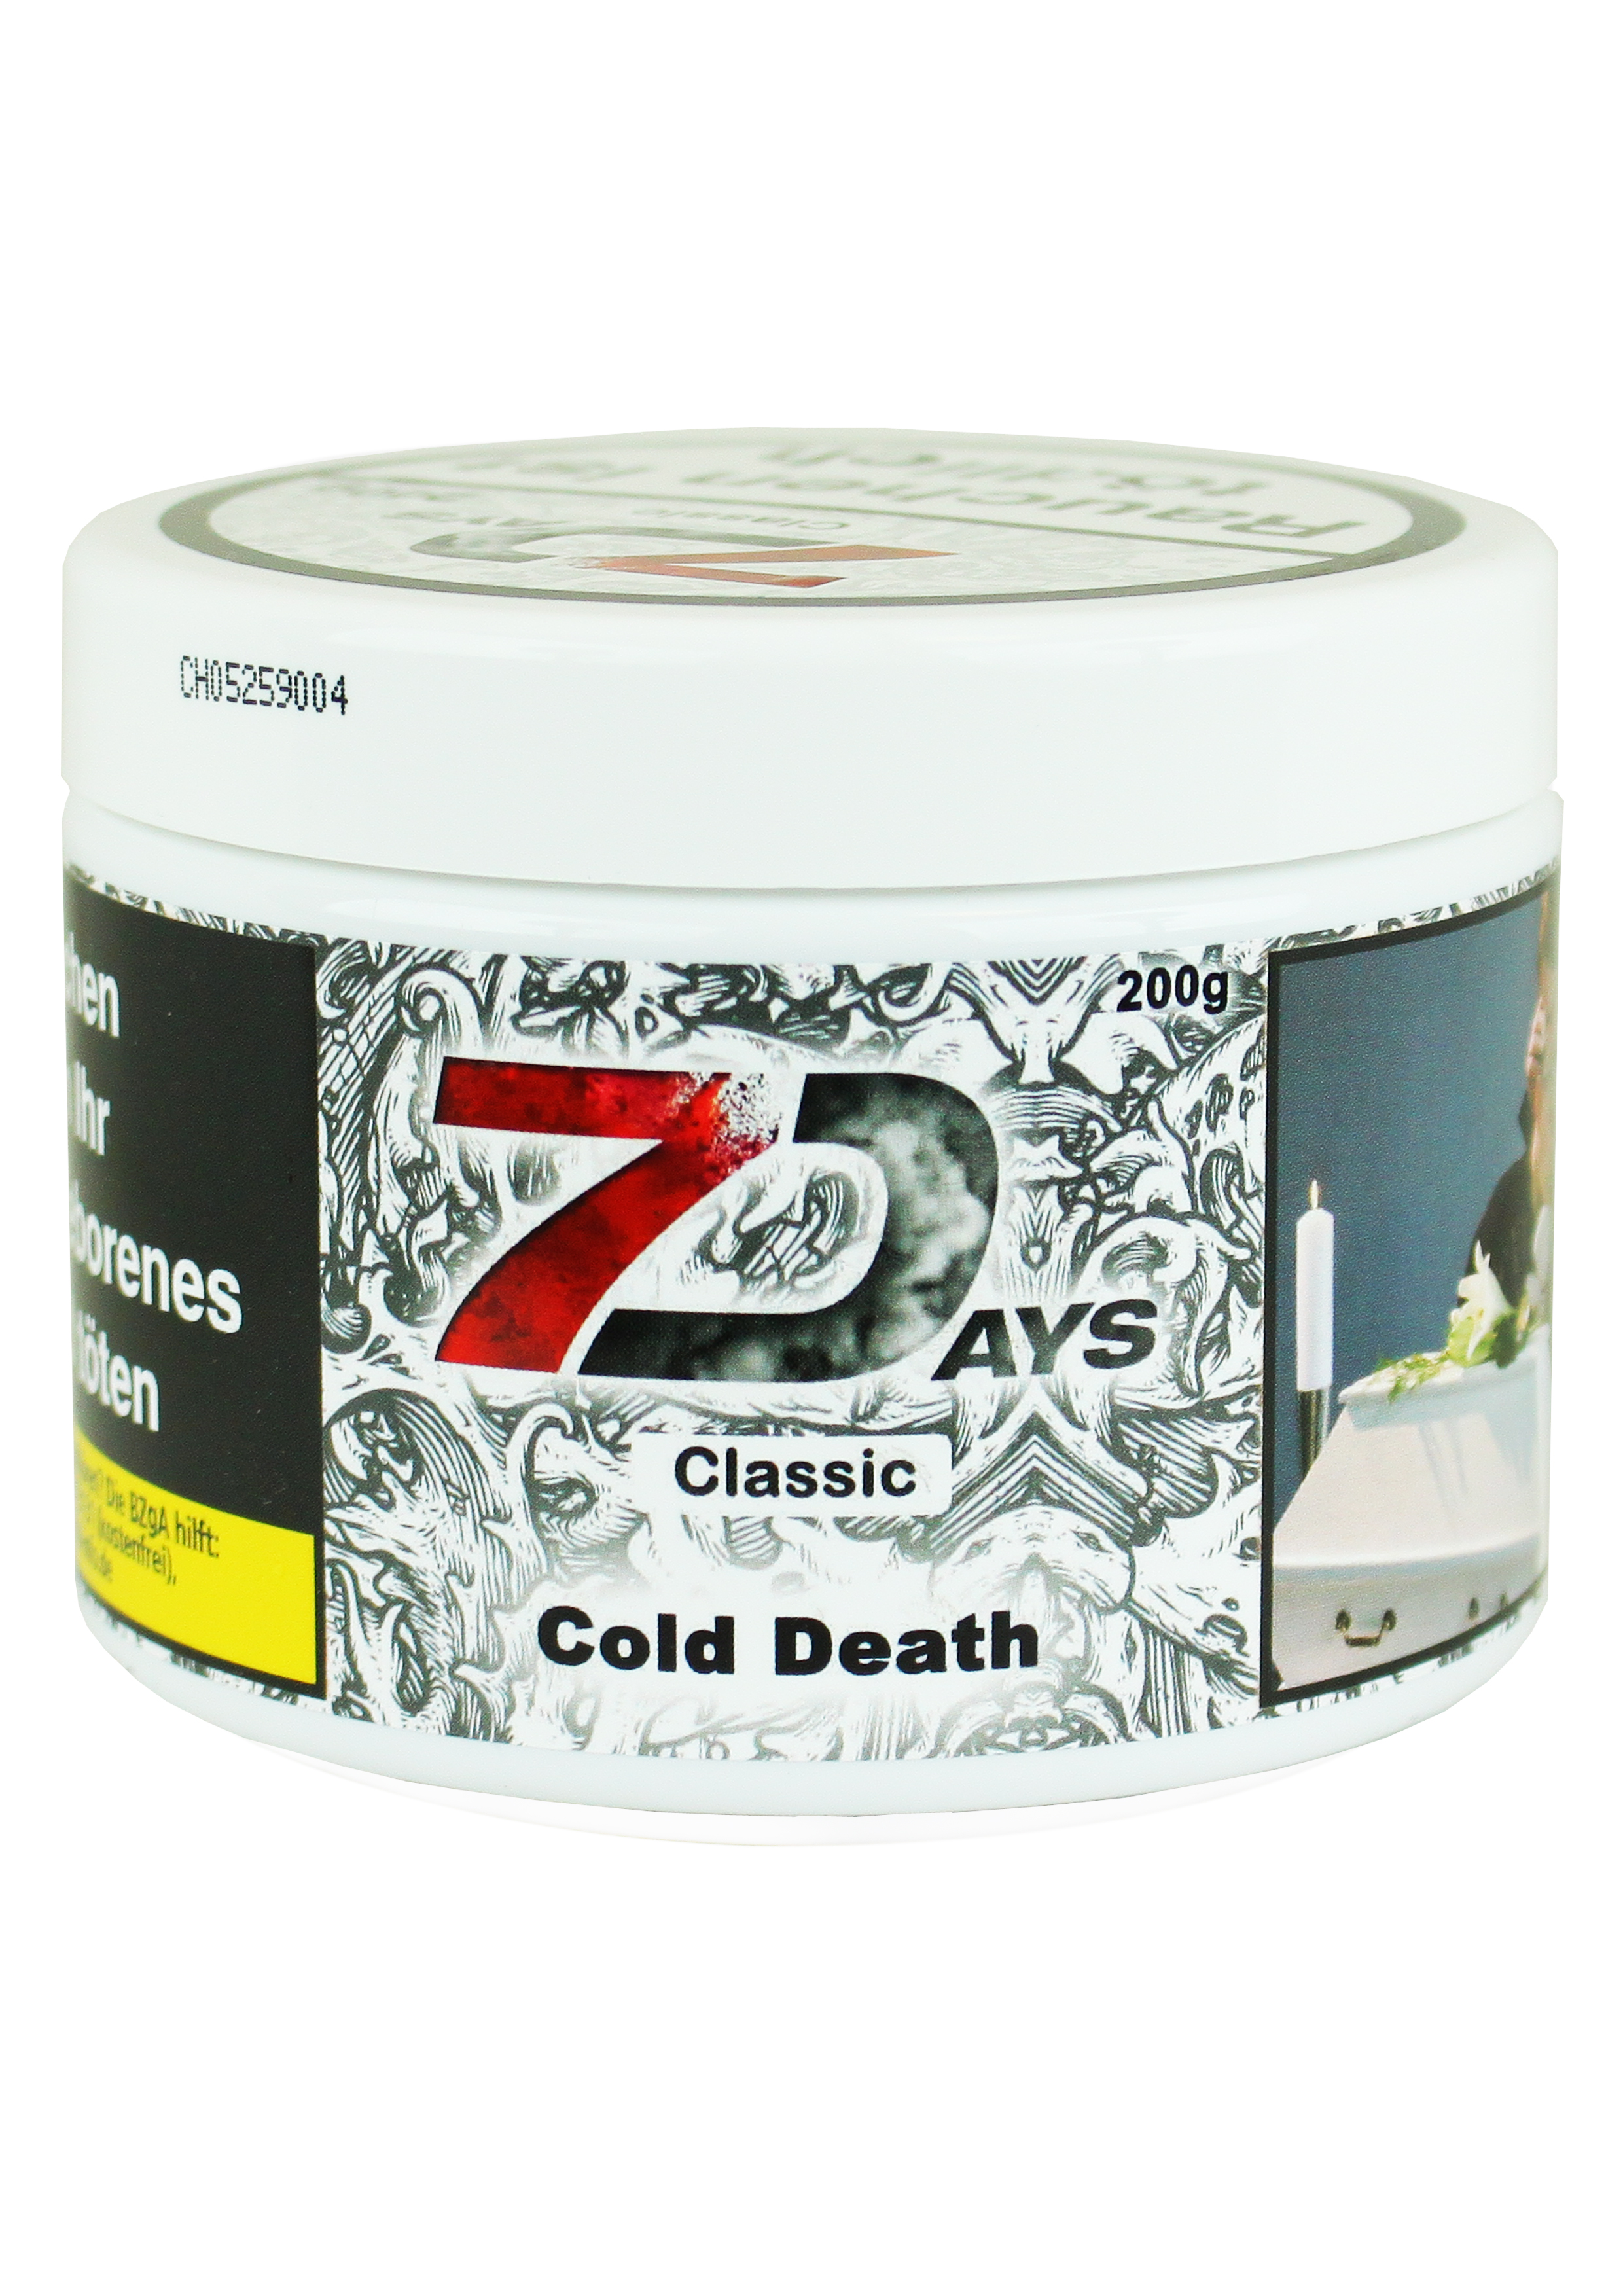 7Days Cold Death 200g